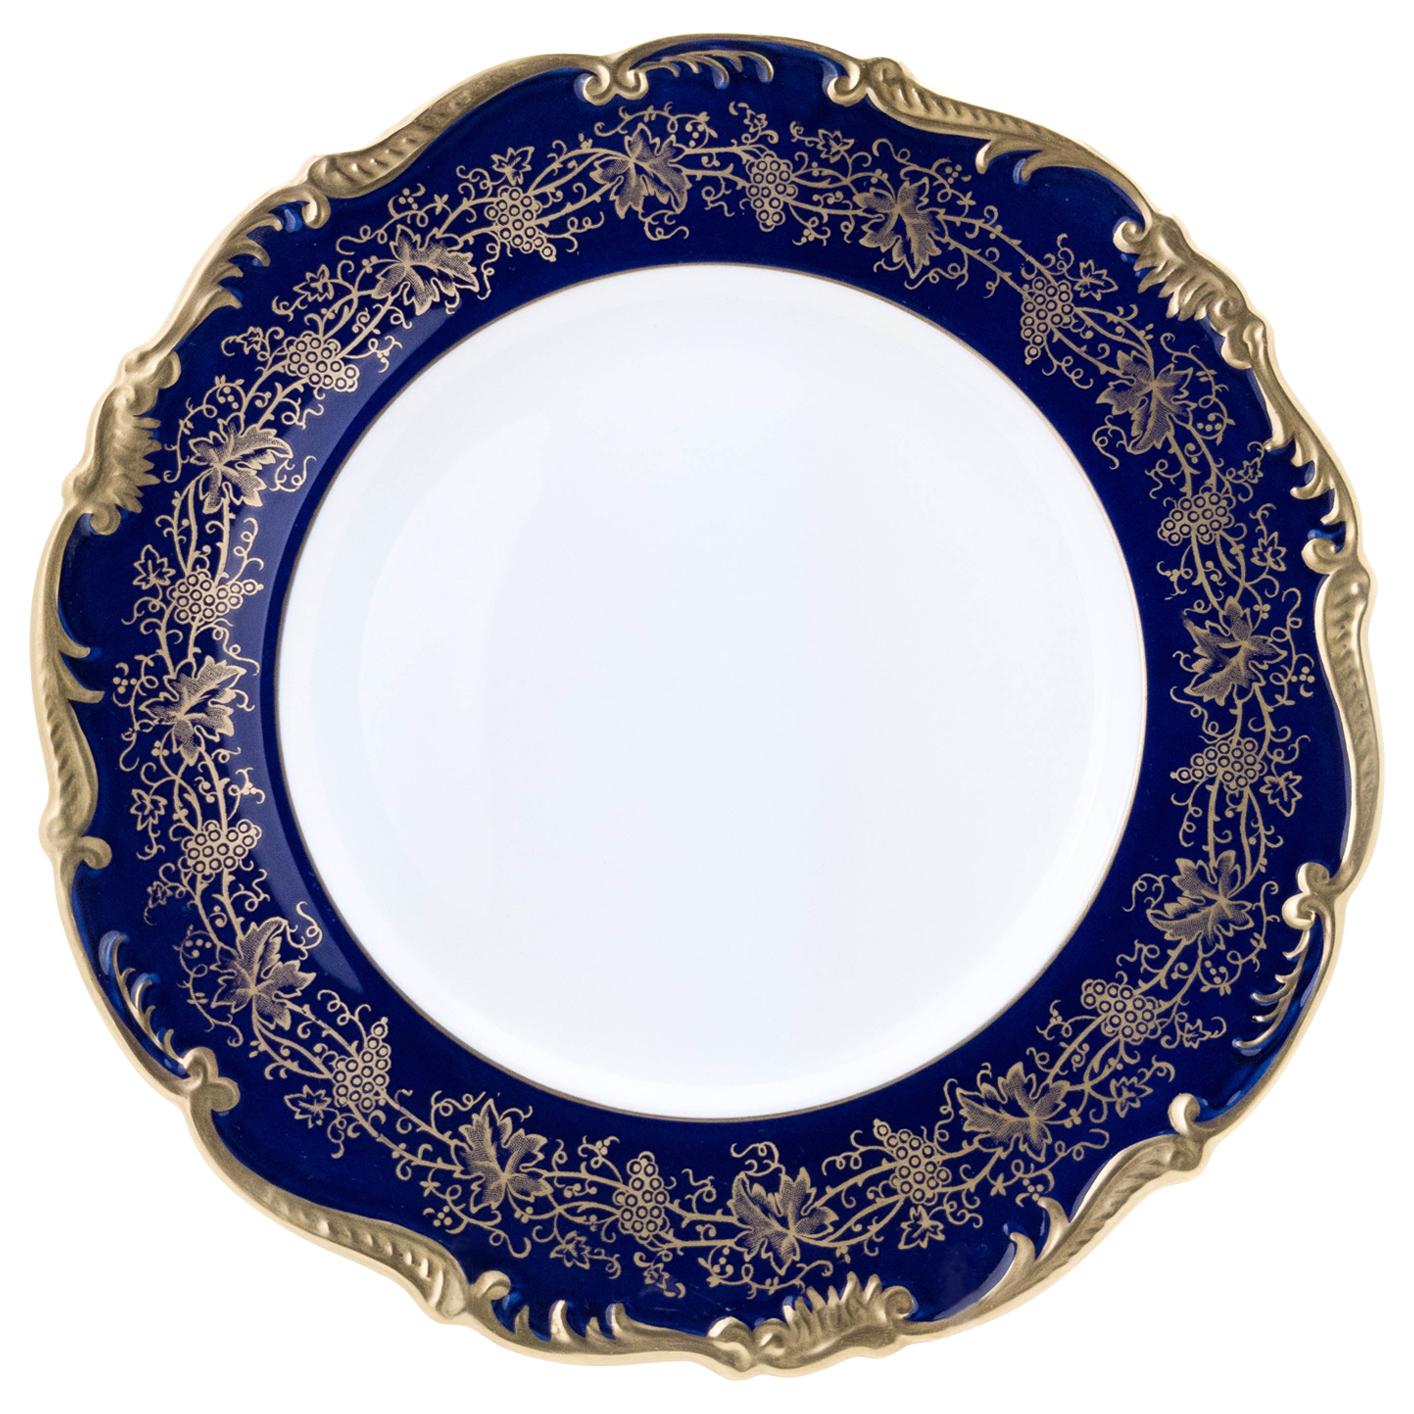 12 Vintage Cobalt Blue Dinner Plates by Coalport England, Great Shape